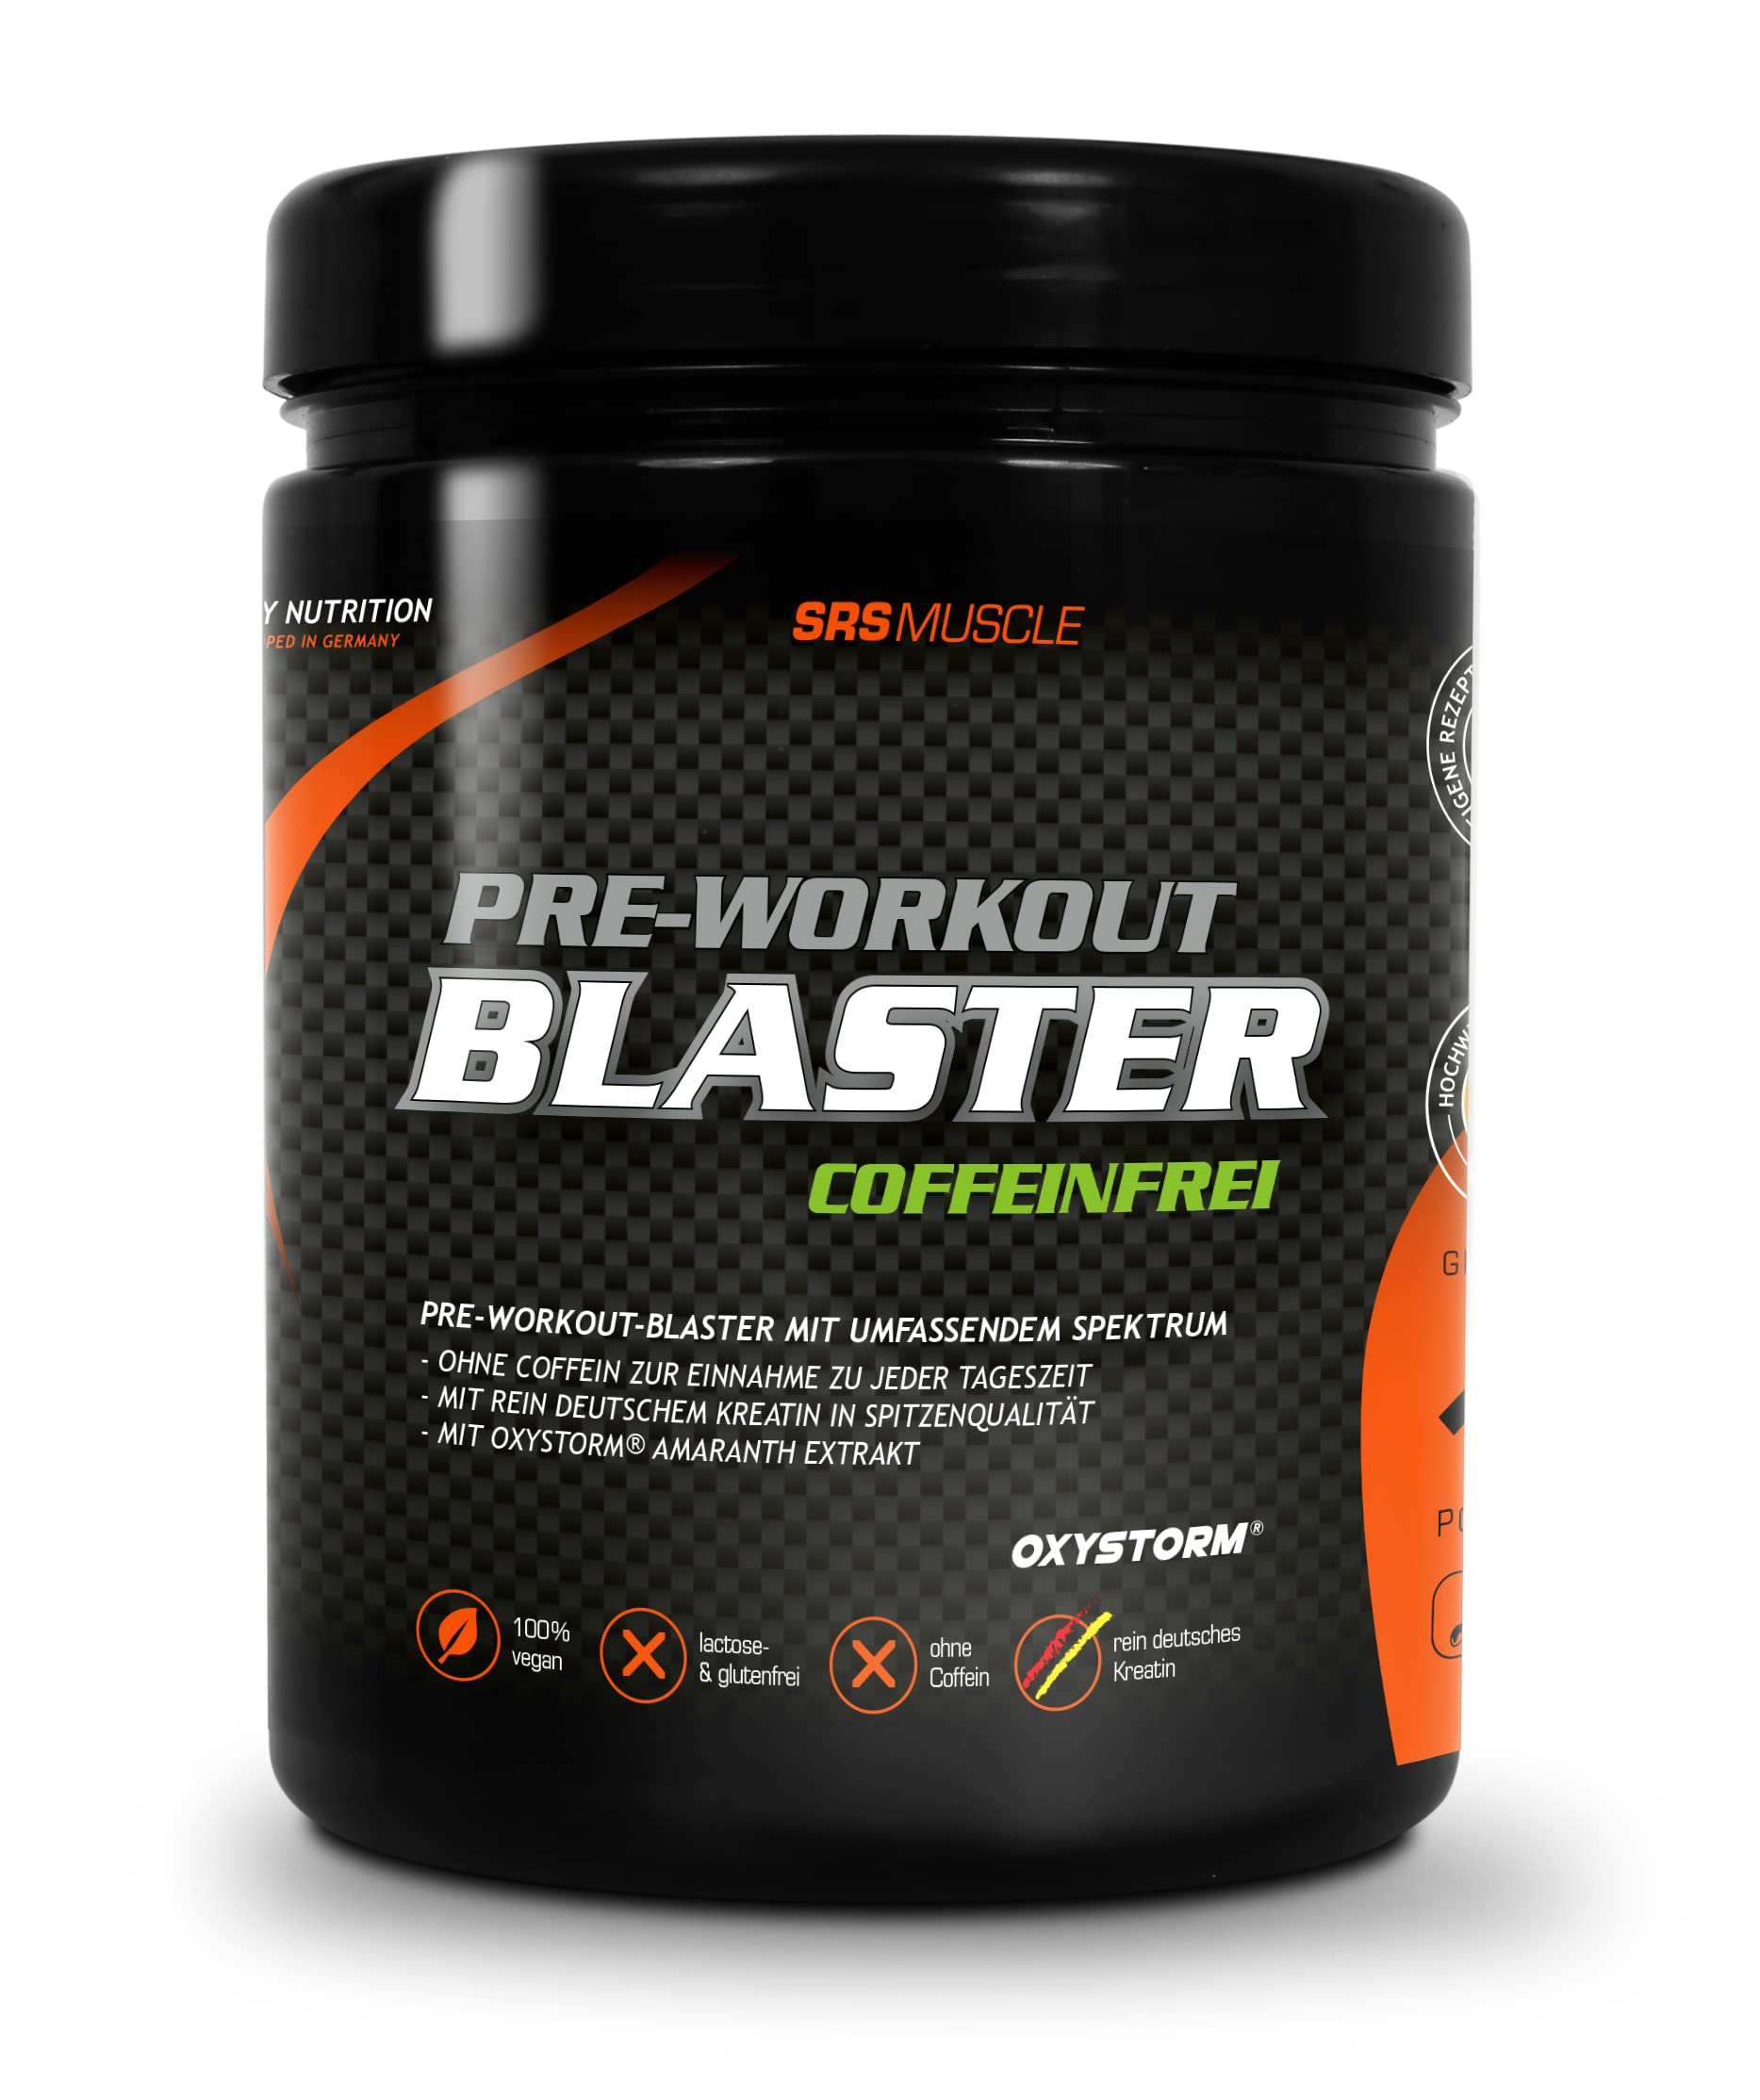 SRS Muscle - Blaster | Pre-Workout Booster ohne Coffein | Alleskönner für Pump, Fokus, Power ... | vegan | deutsche Premiumqualität (Wassermelone)